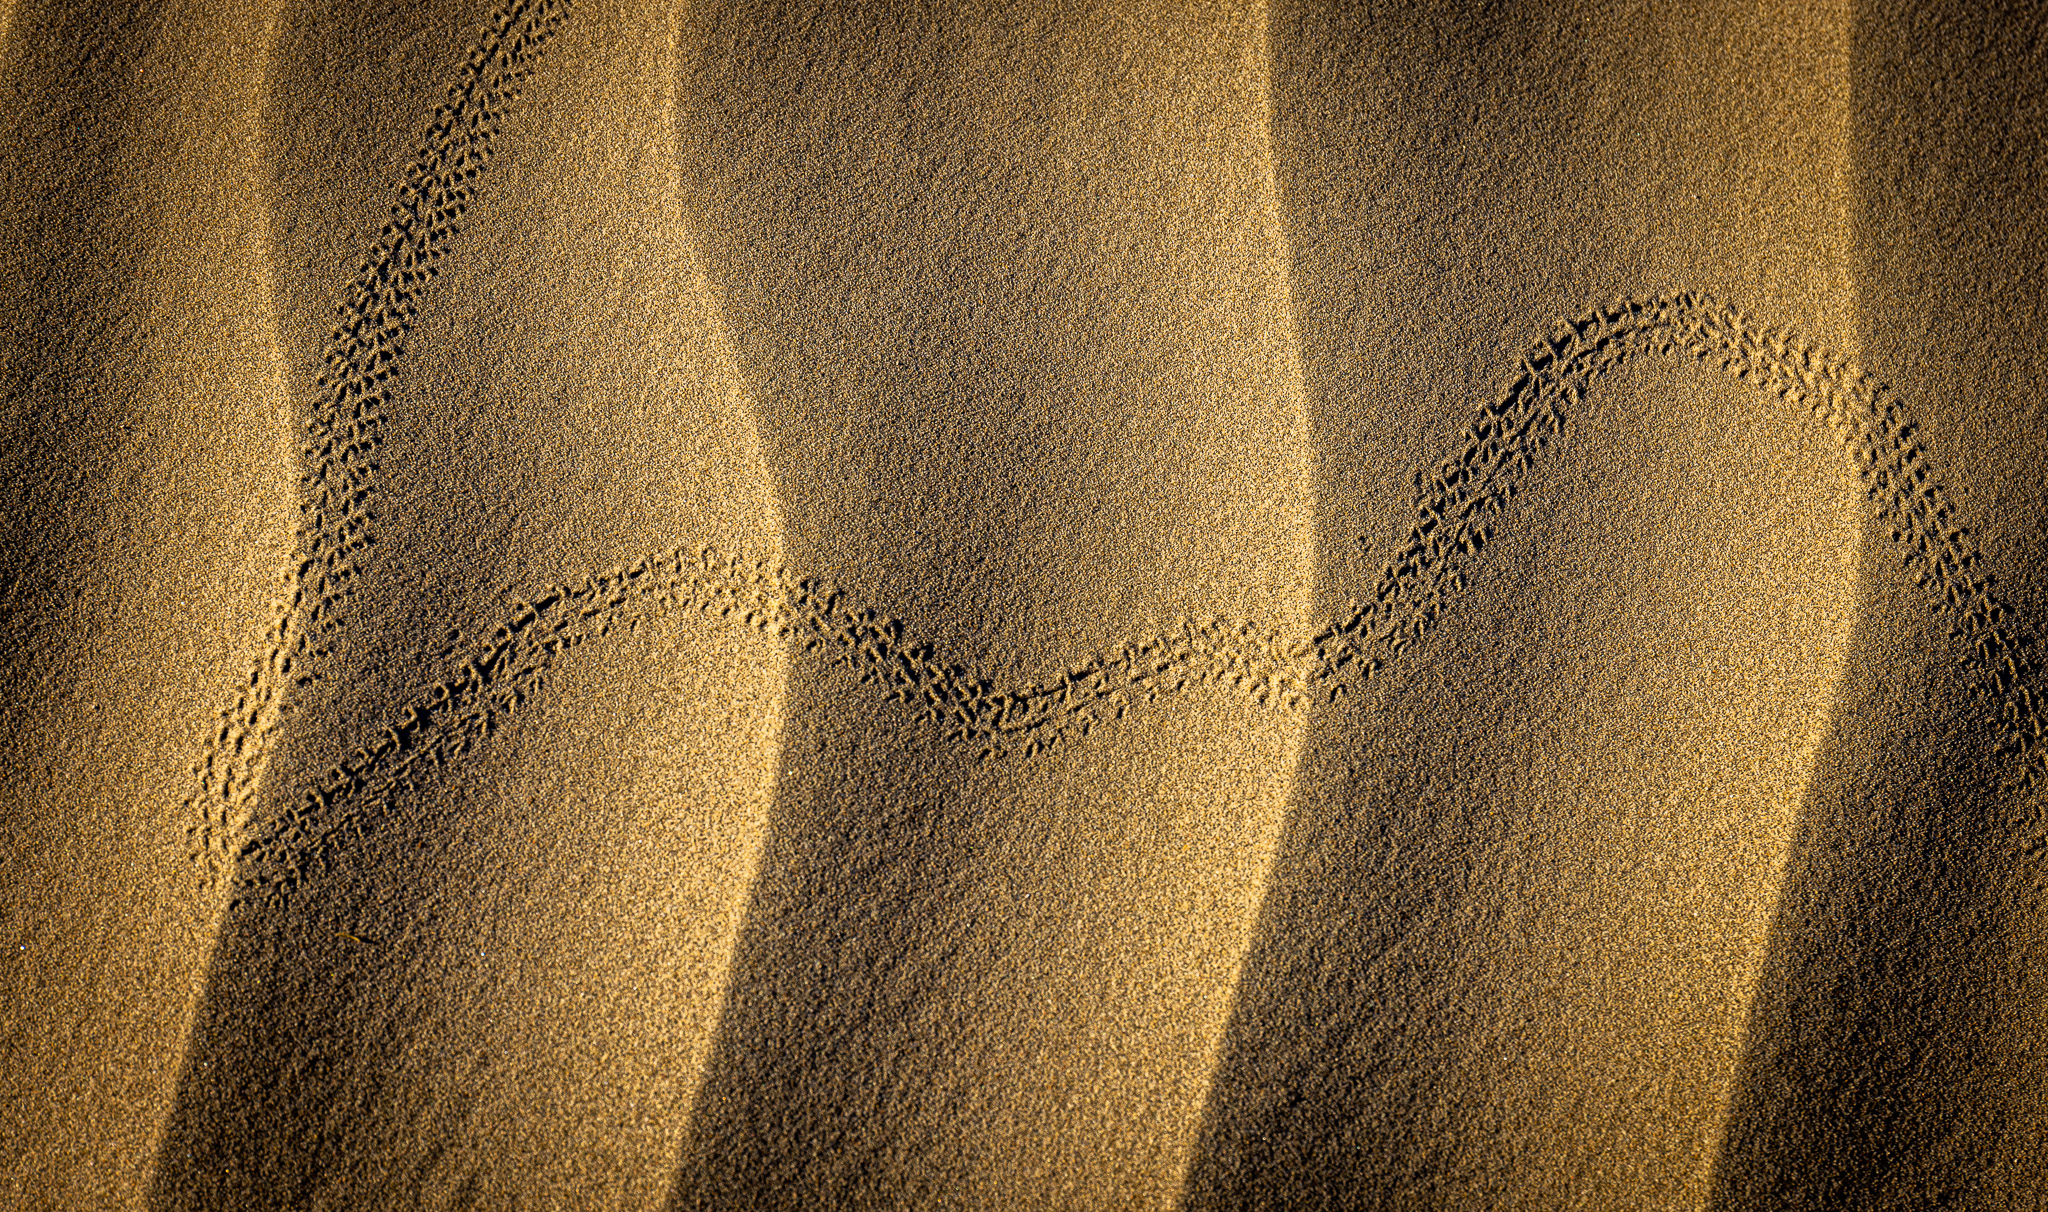 Mesquite Dunes tracks